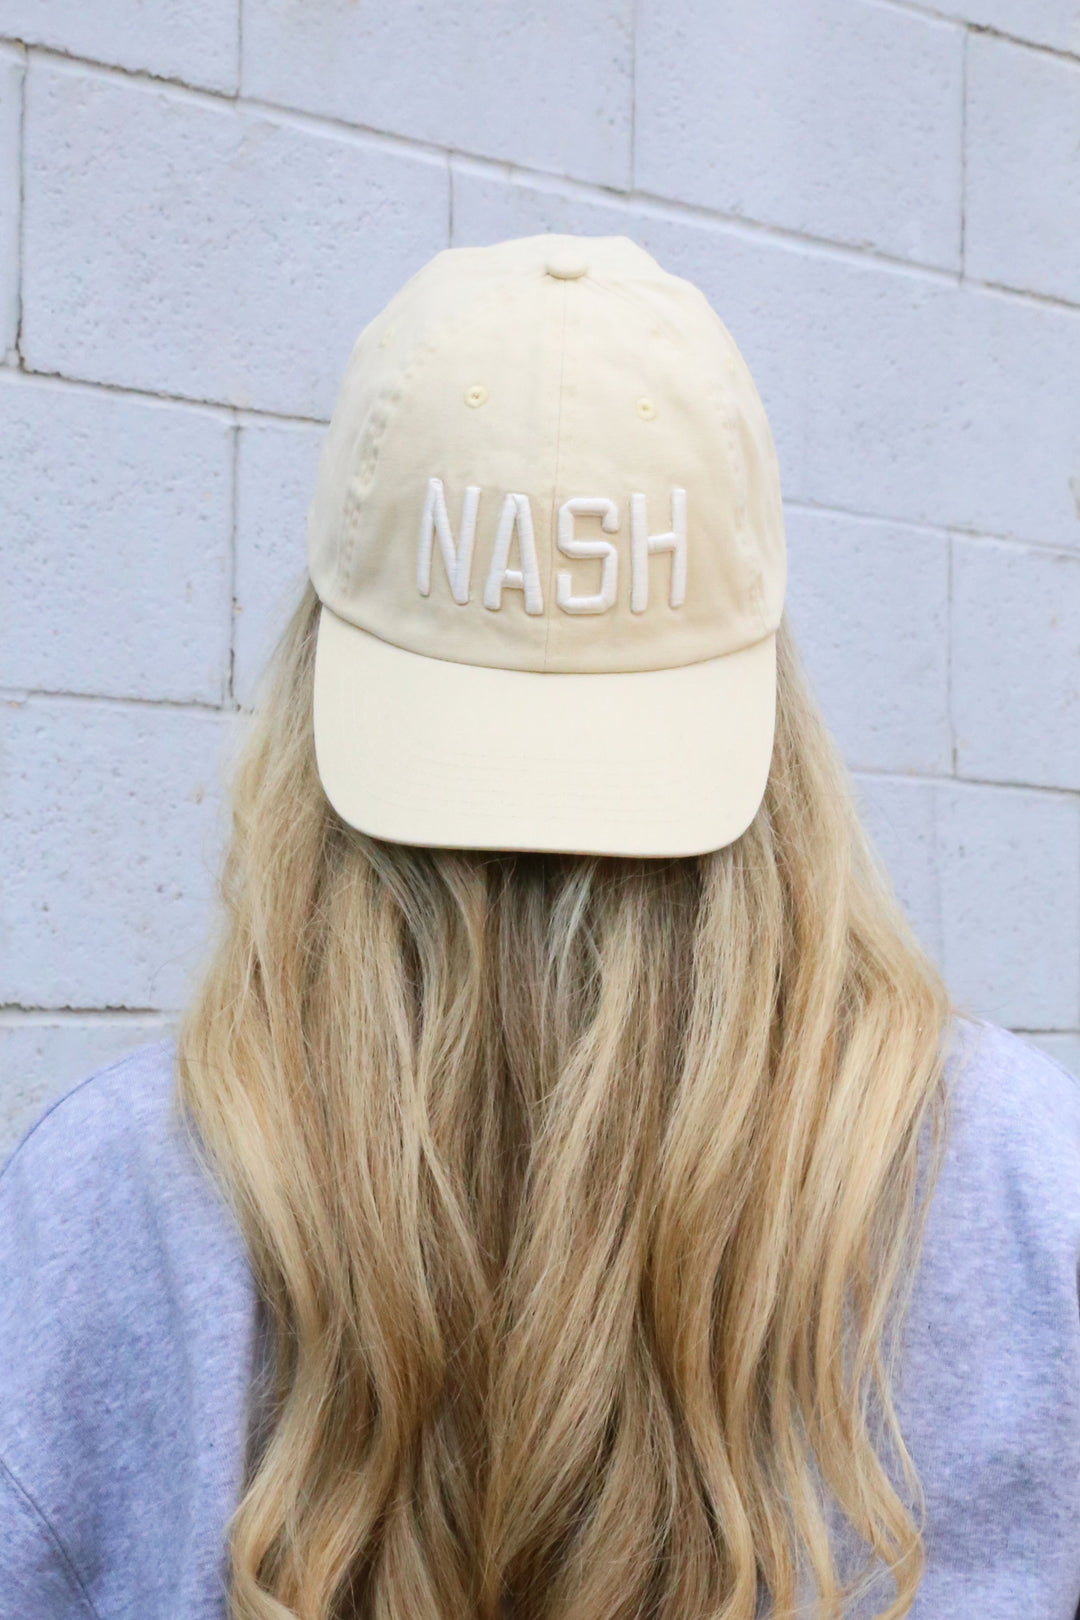 NASH Ball Cap [Cream] – The Nash Collection | Baseball Caps